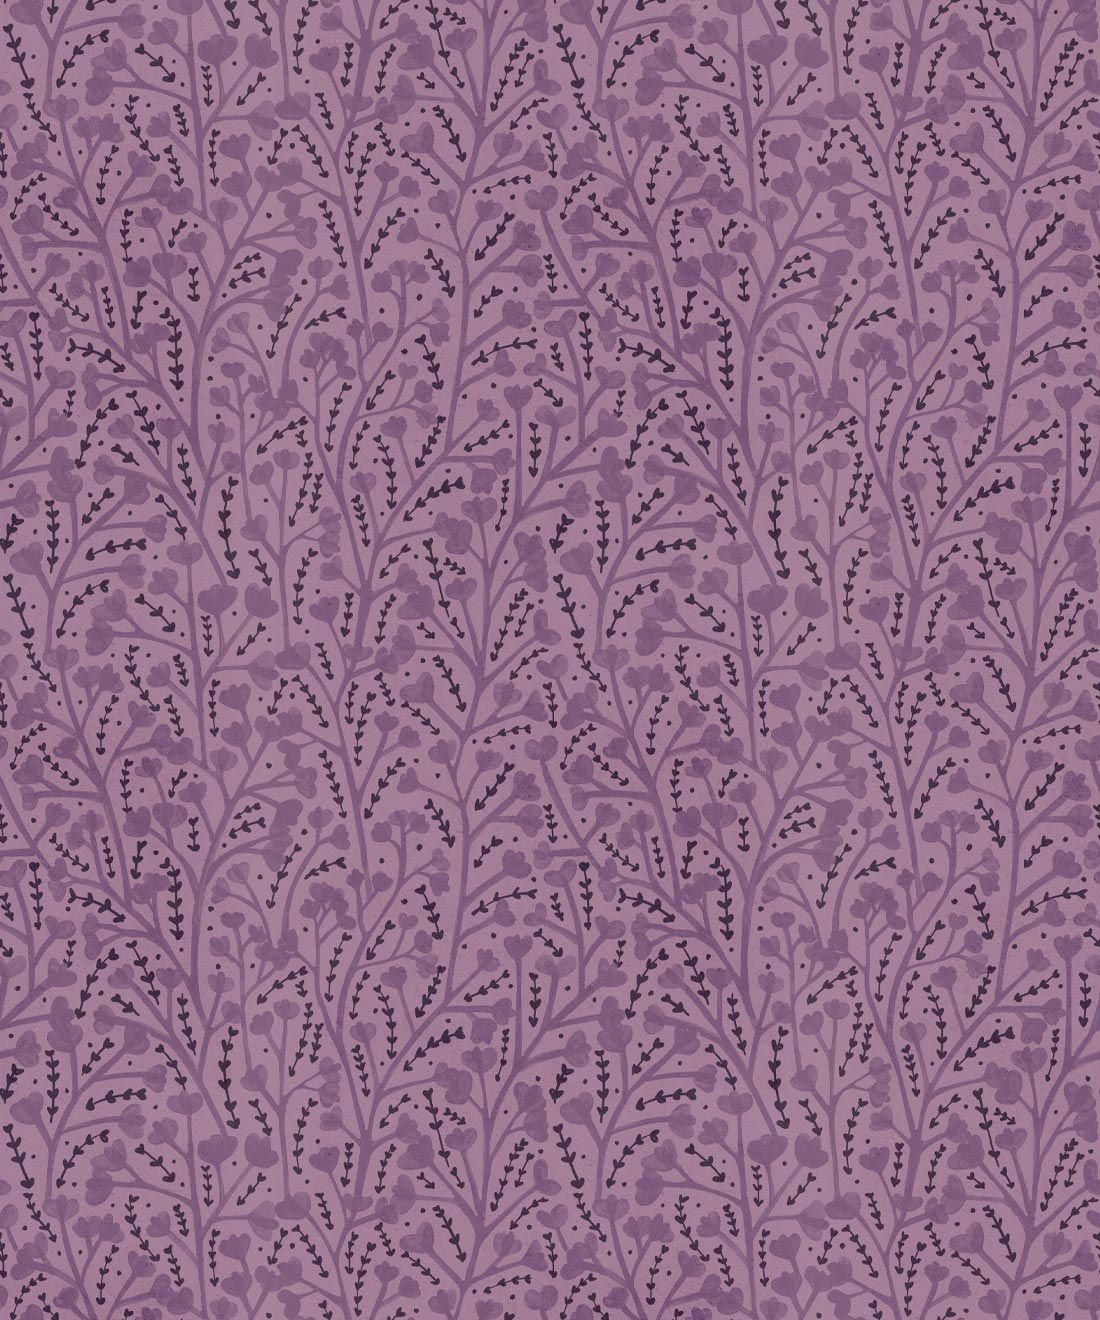 Petals Wallpaper • Floral Wallpaper • Lavender • Swatch